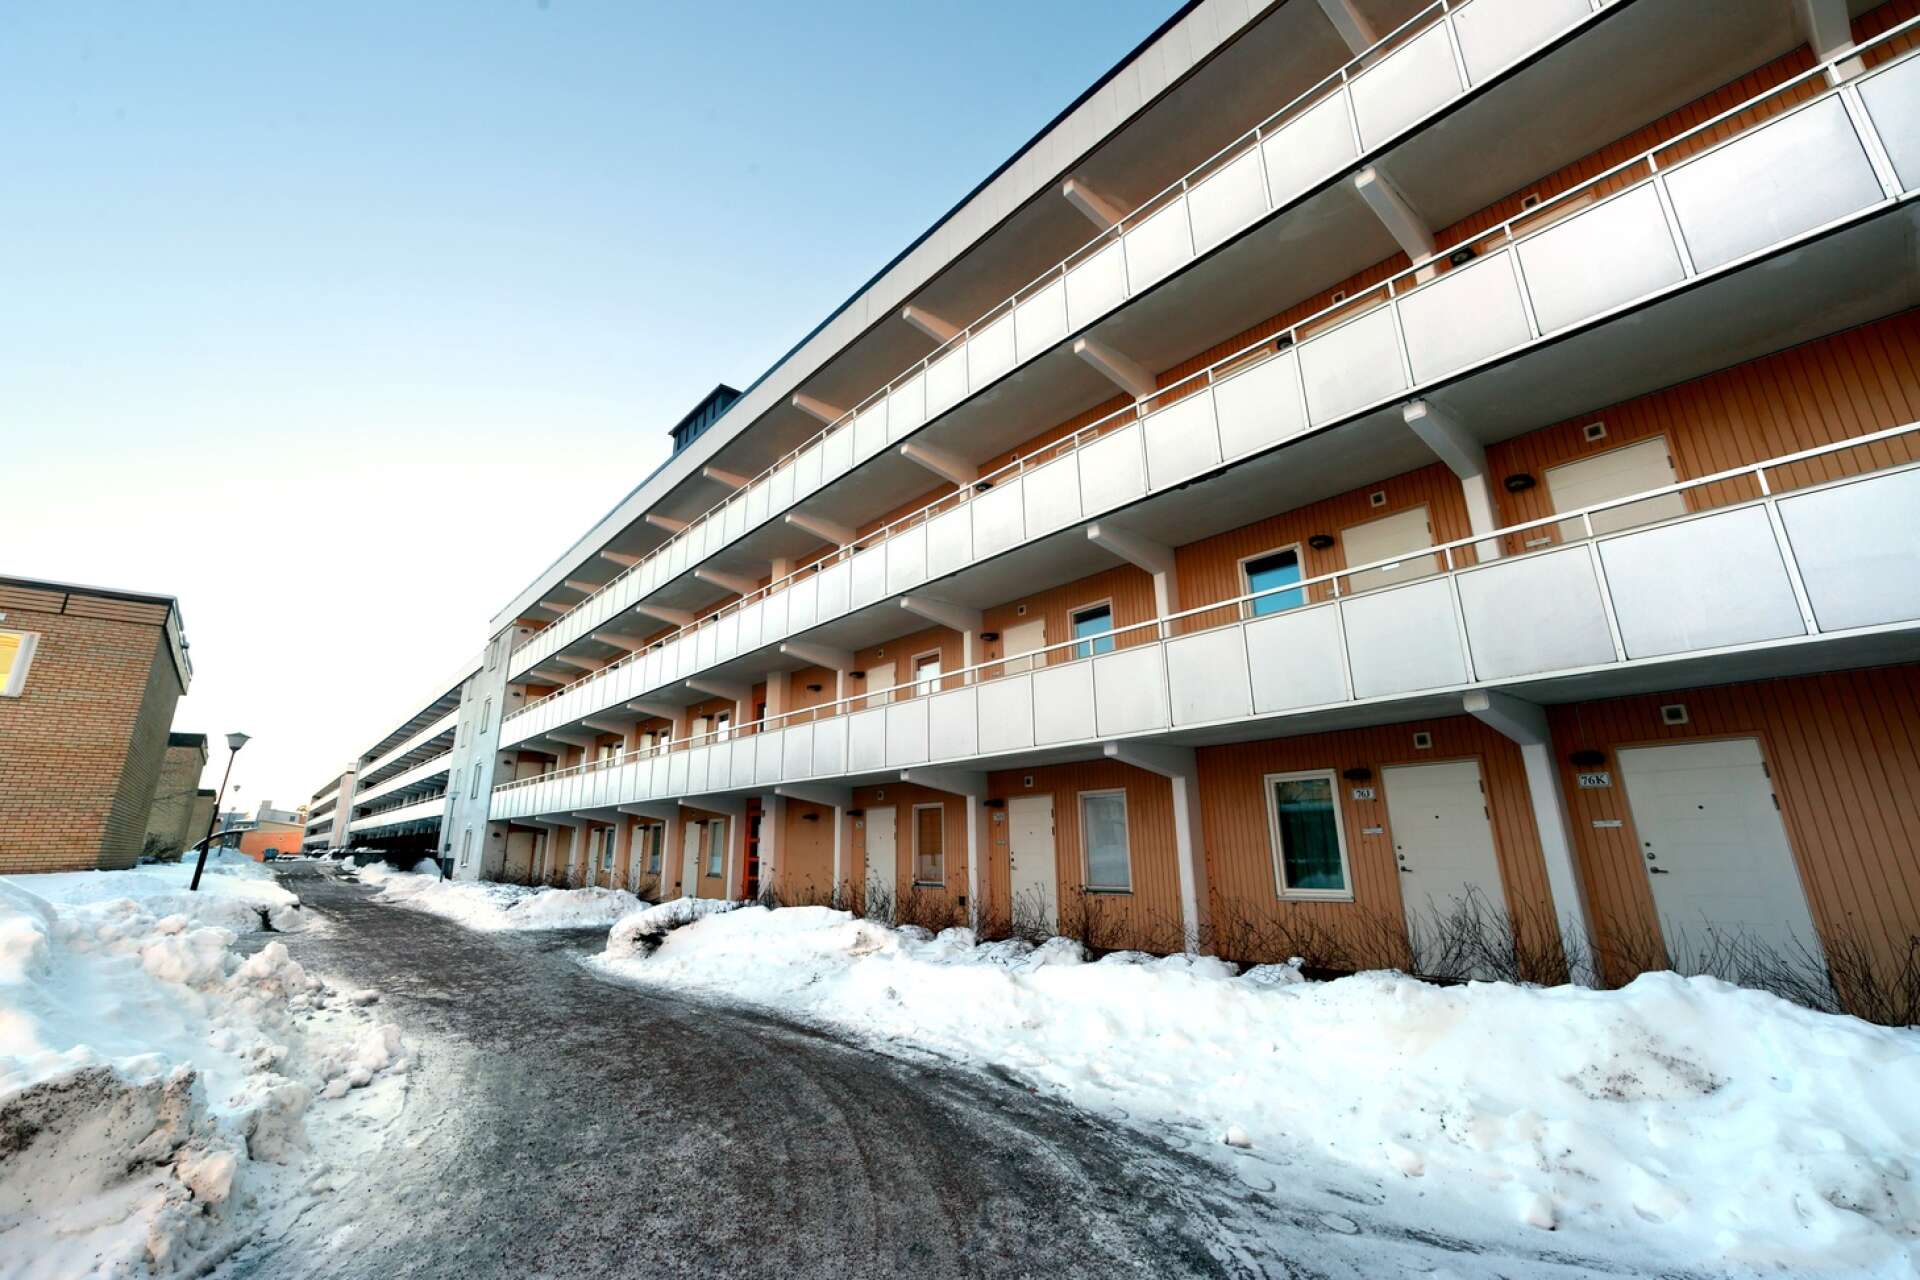 Invånarna på postnumret på Jakthornsgatan har lägst klimatutsläpp från sin konsumtion i Karlstads kommun. Varannan invånare lever med låg ekonomisk standard.